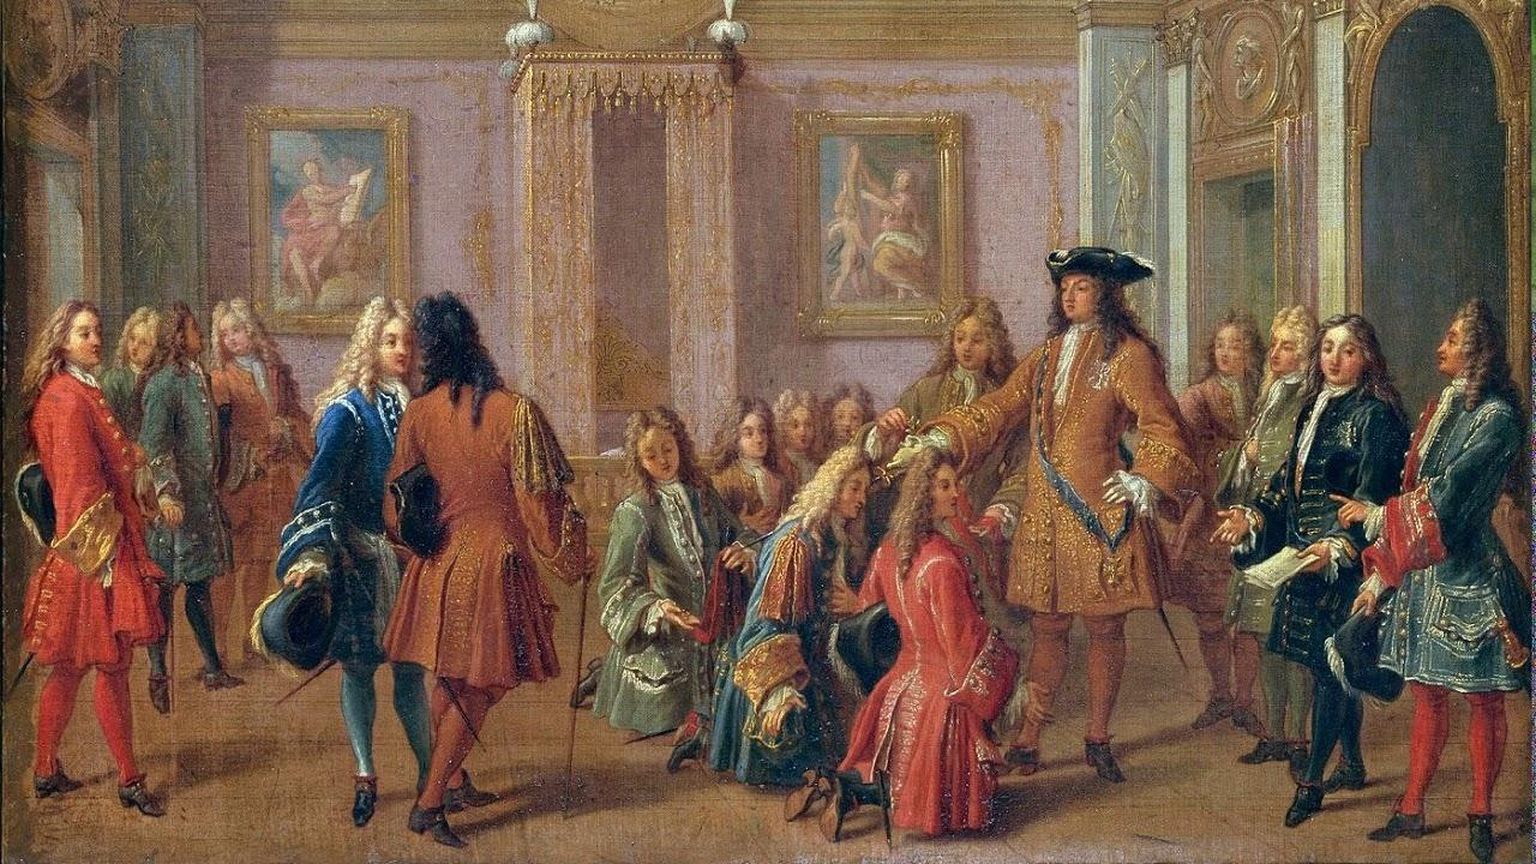 Õukondlik misanstseen Versailles’ lossis kuningas Louis XIV valitsusajal.